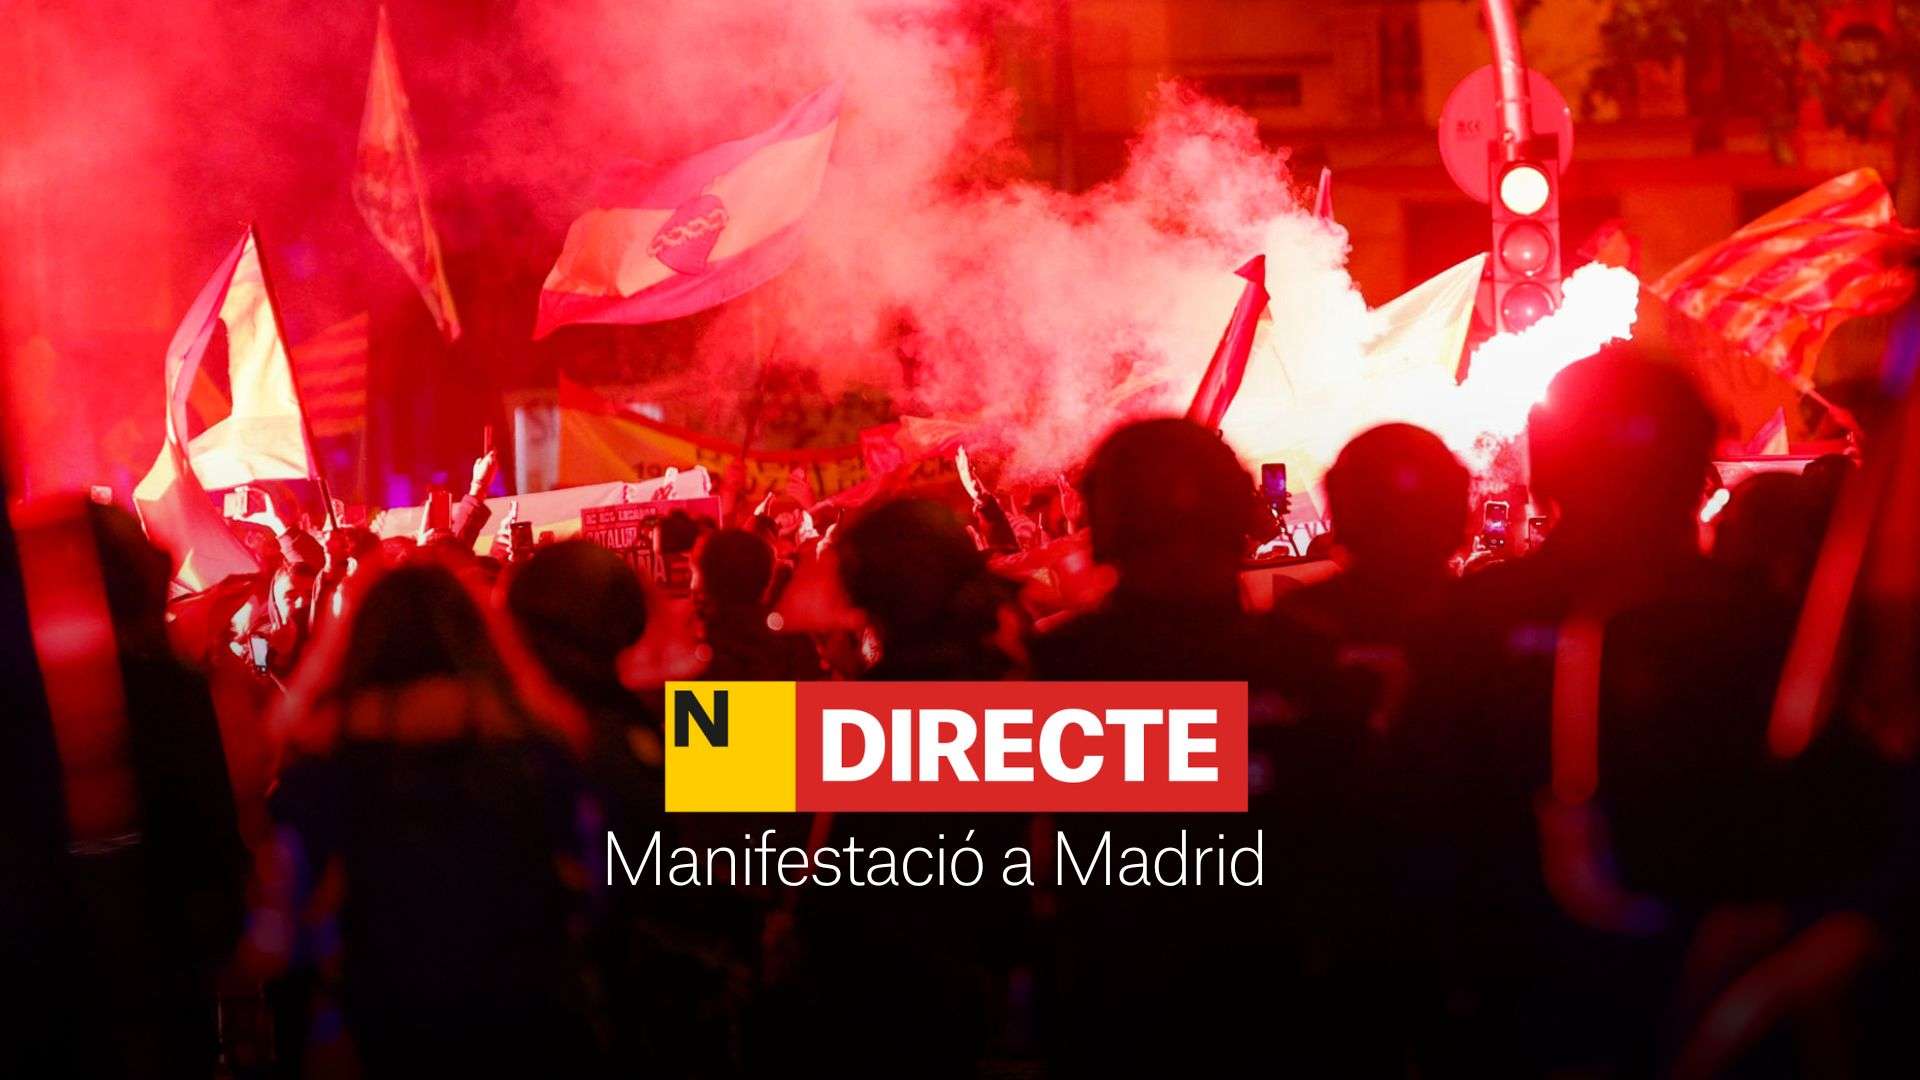 Manifestació a Ferraz avui, DIRECTE | Protestes contra l'amnistia a Madrid